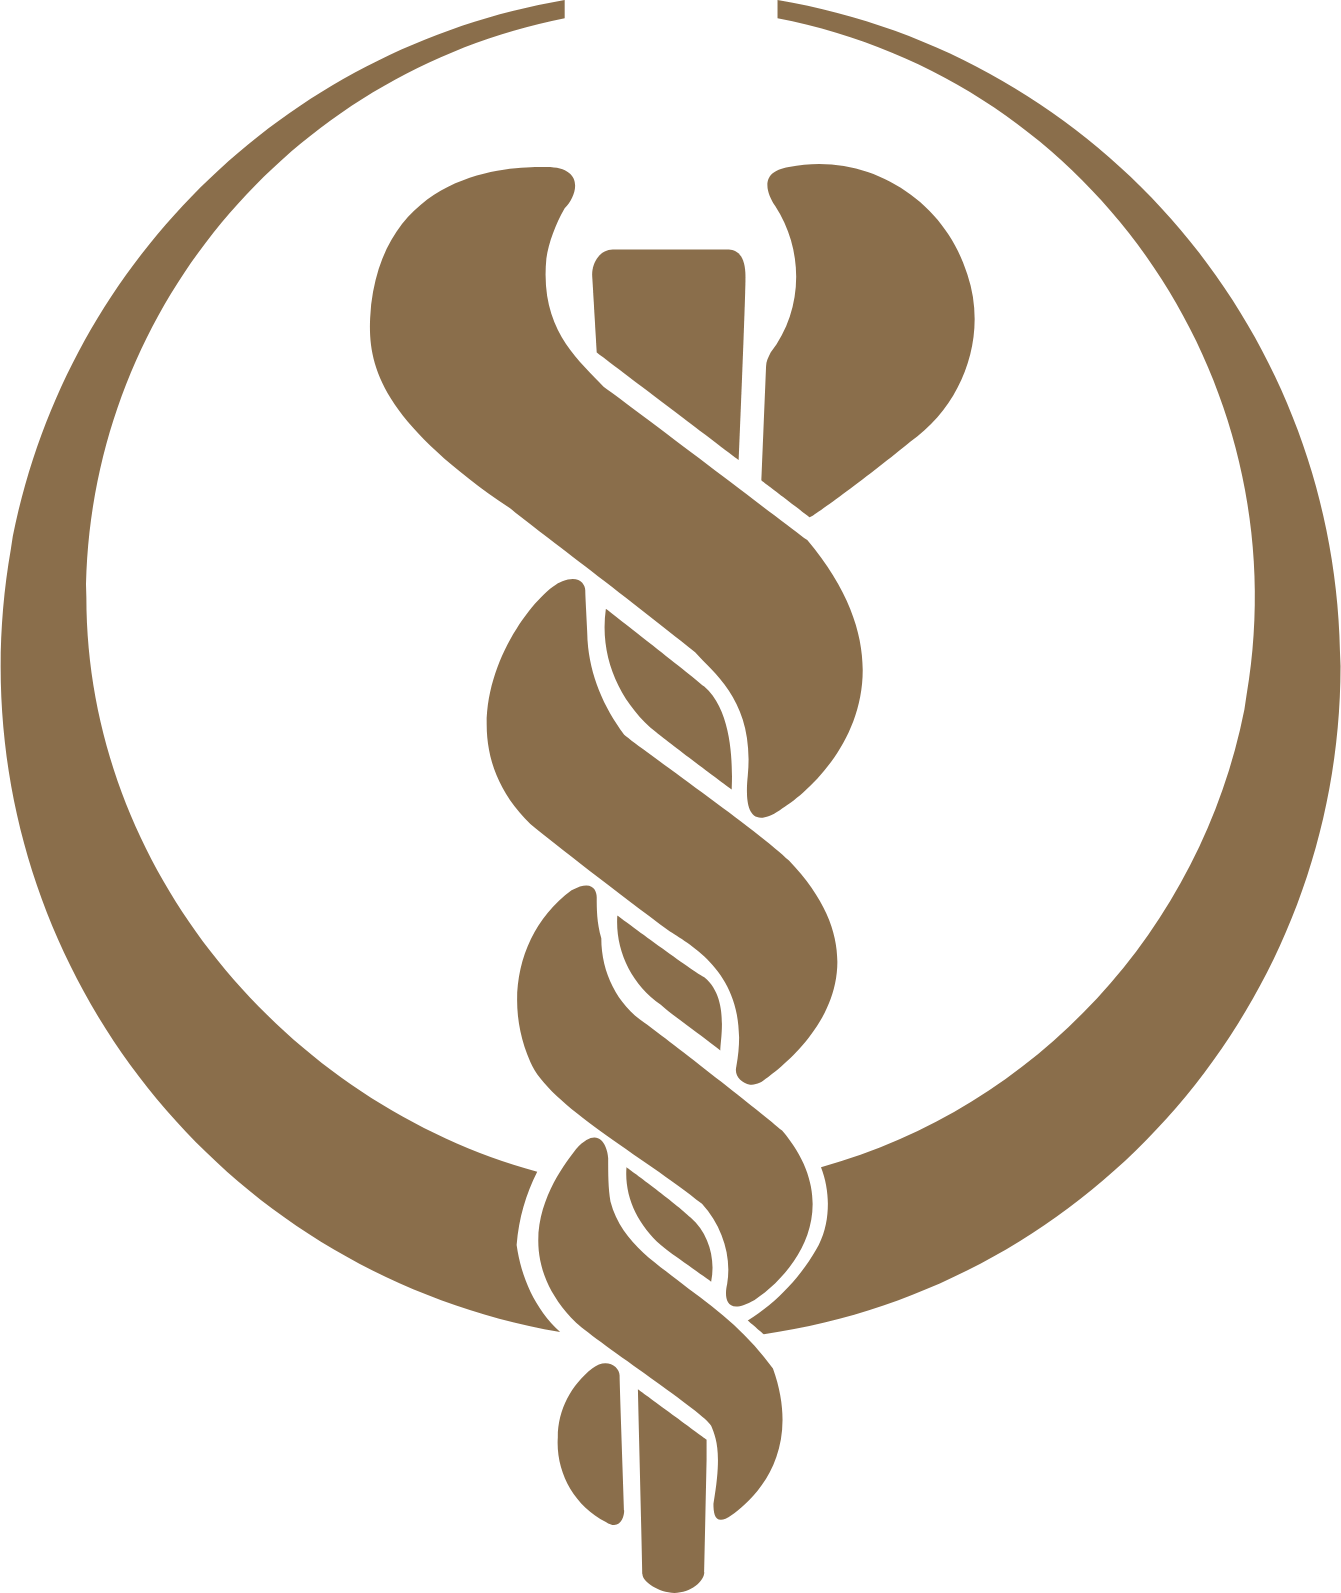 Bumrungrad Hospital logo (PNG transparent)